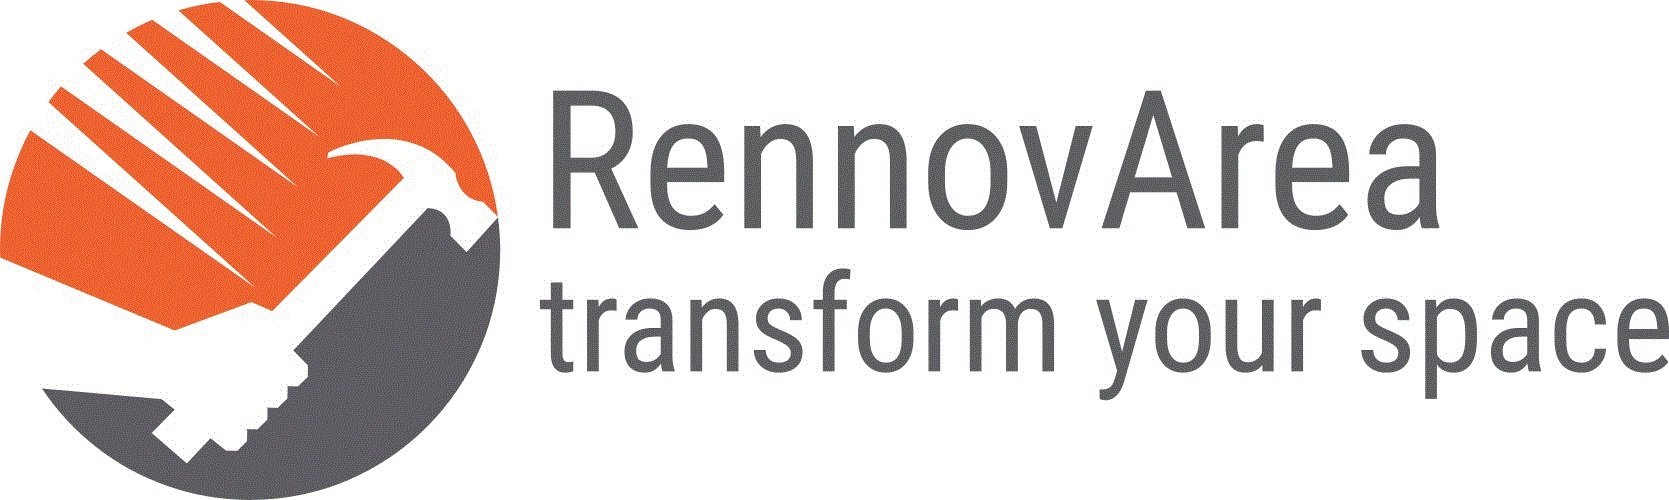 RennovArea's logo